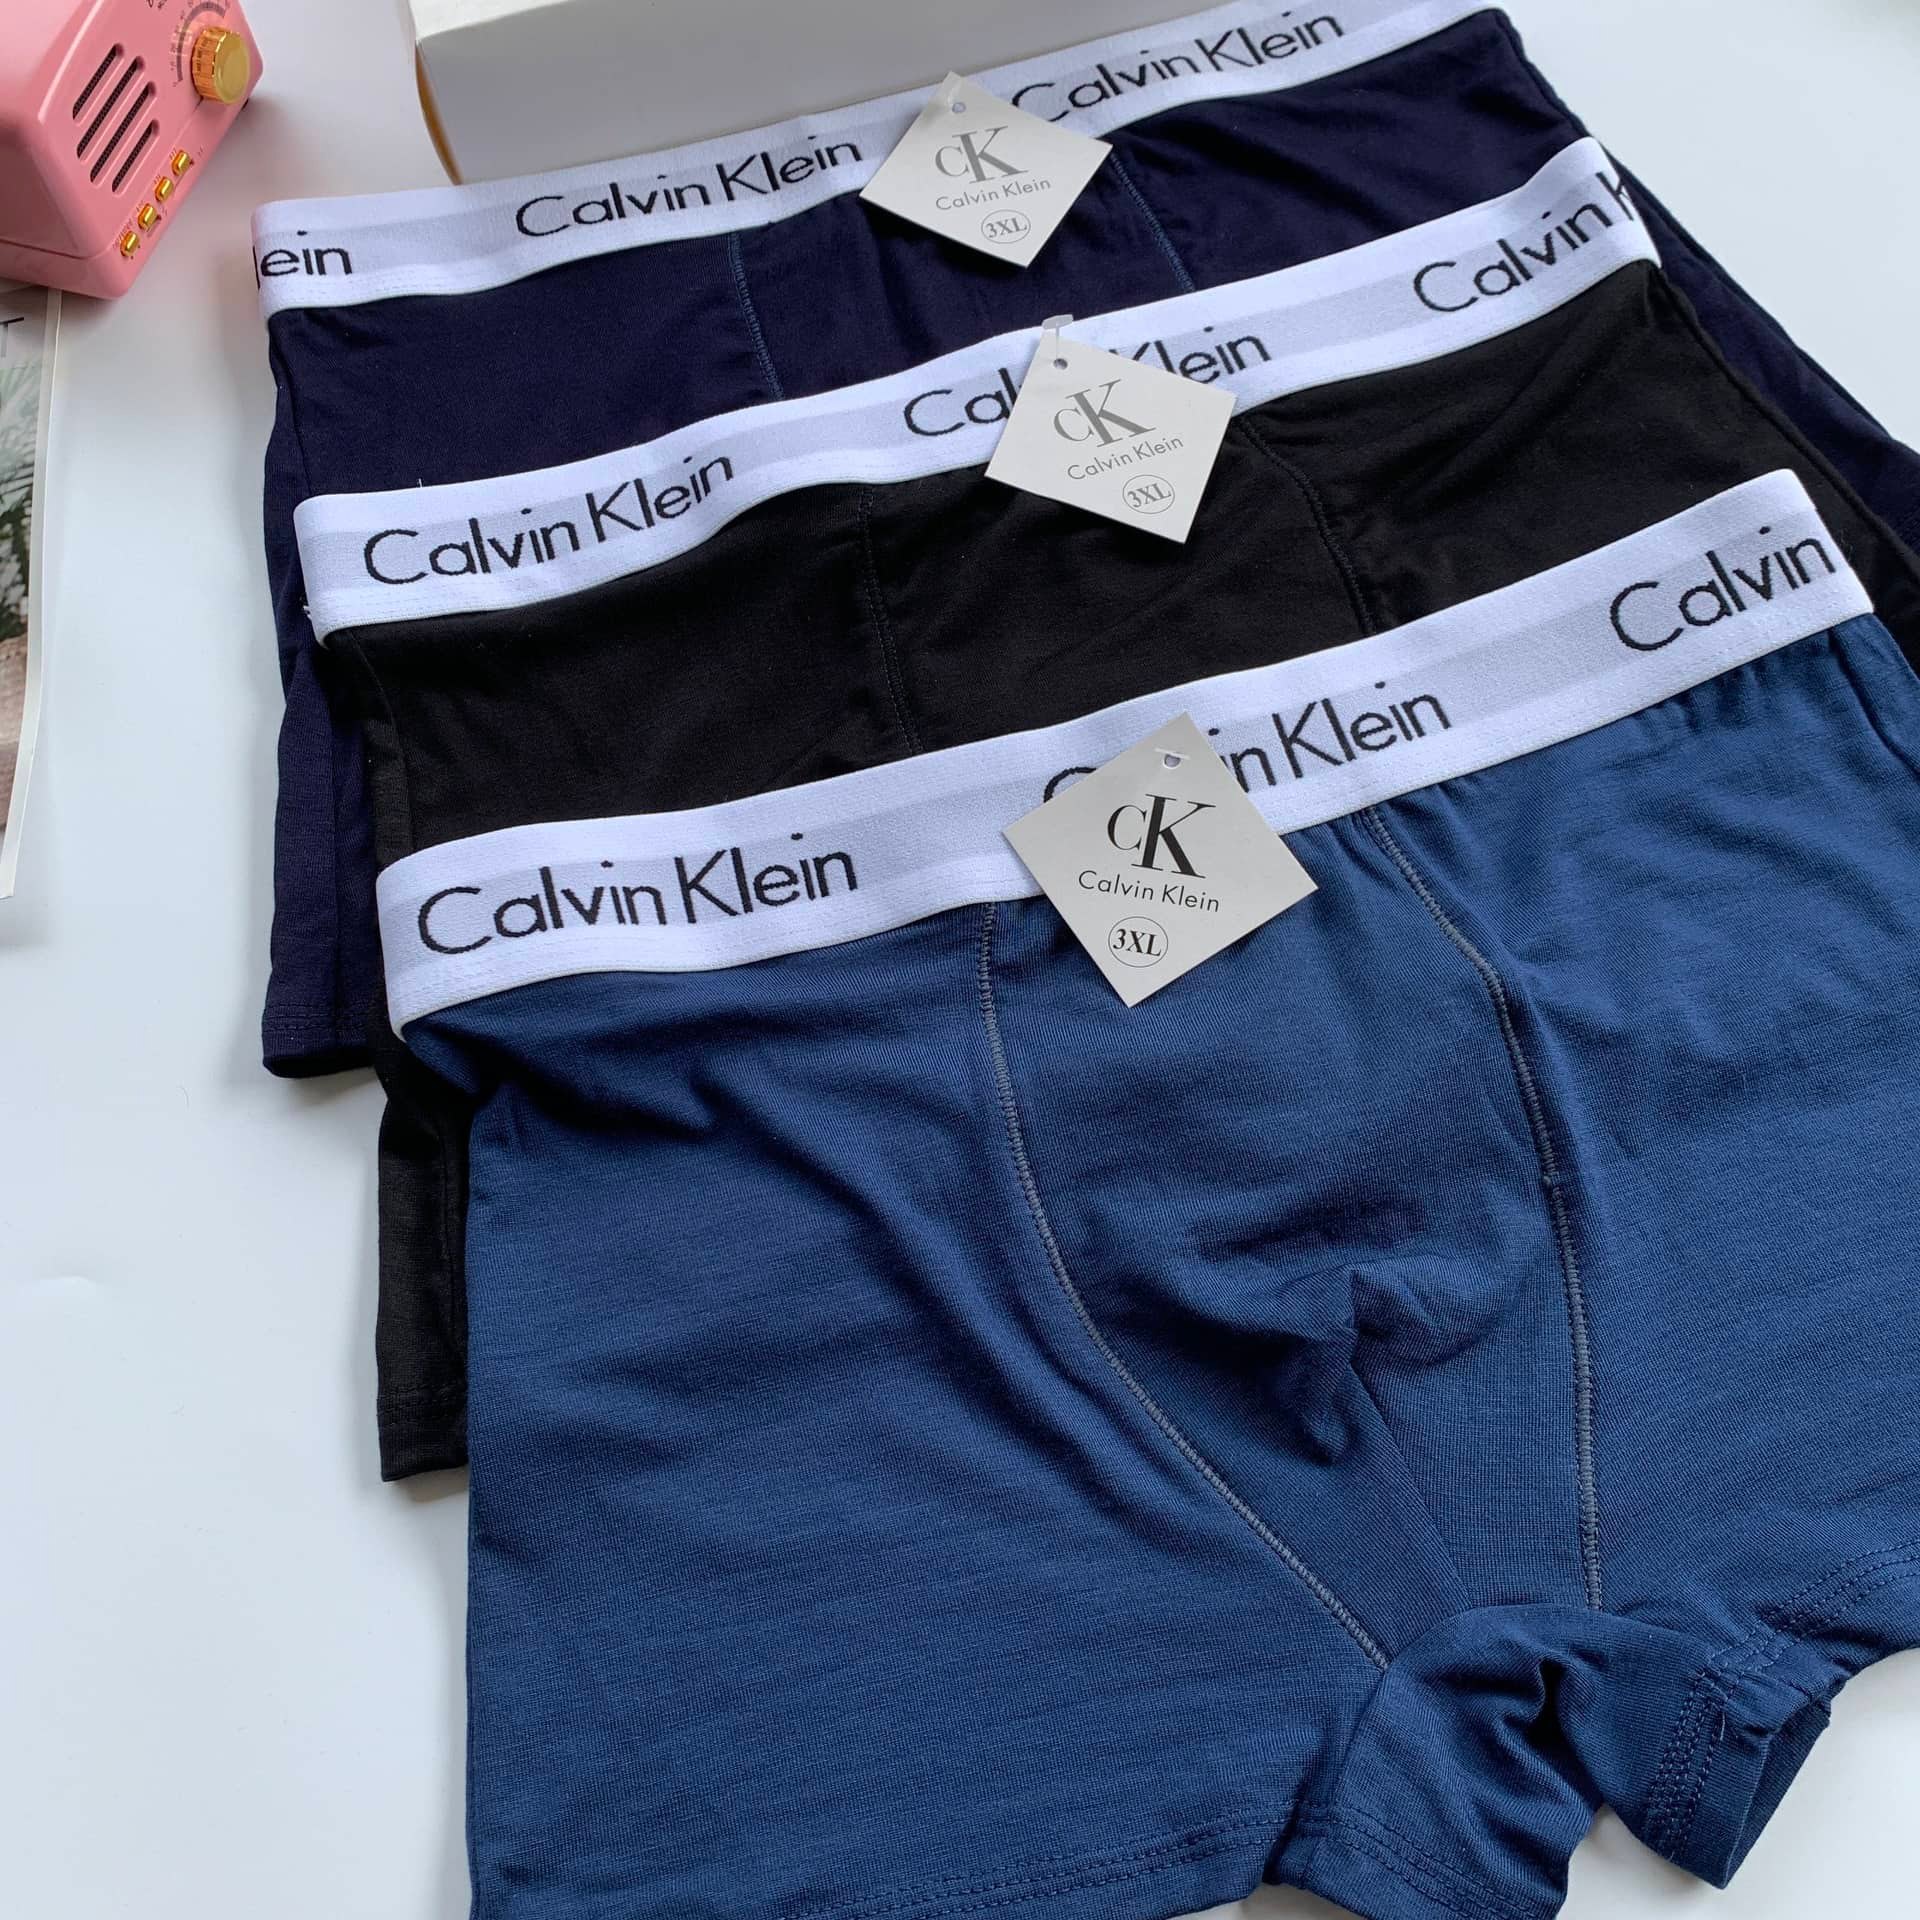 HÀNG LOẠI 1] Quần Sịp Nam Calvin Klein Cotton Thông Hơi Co Giãn 4 chiều,  Quần Lót Nam/ Sịp Đùi CK sexy cao cấp, che tên sản phẩm 